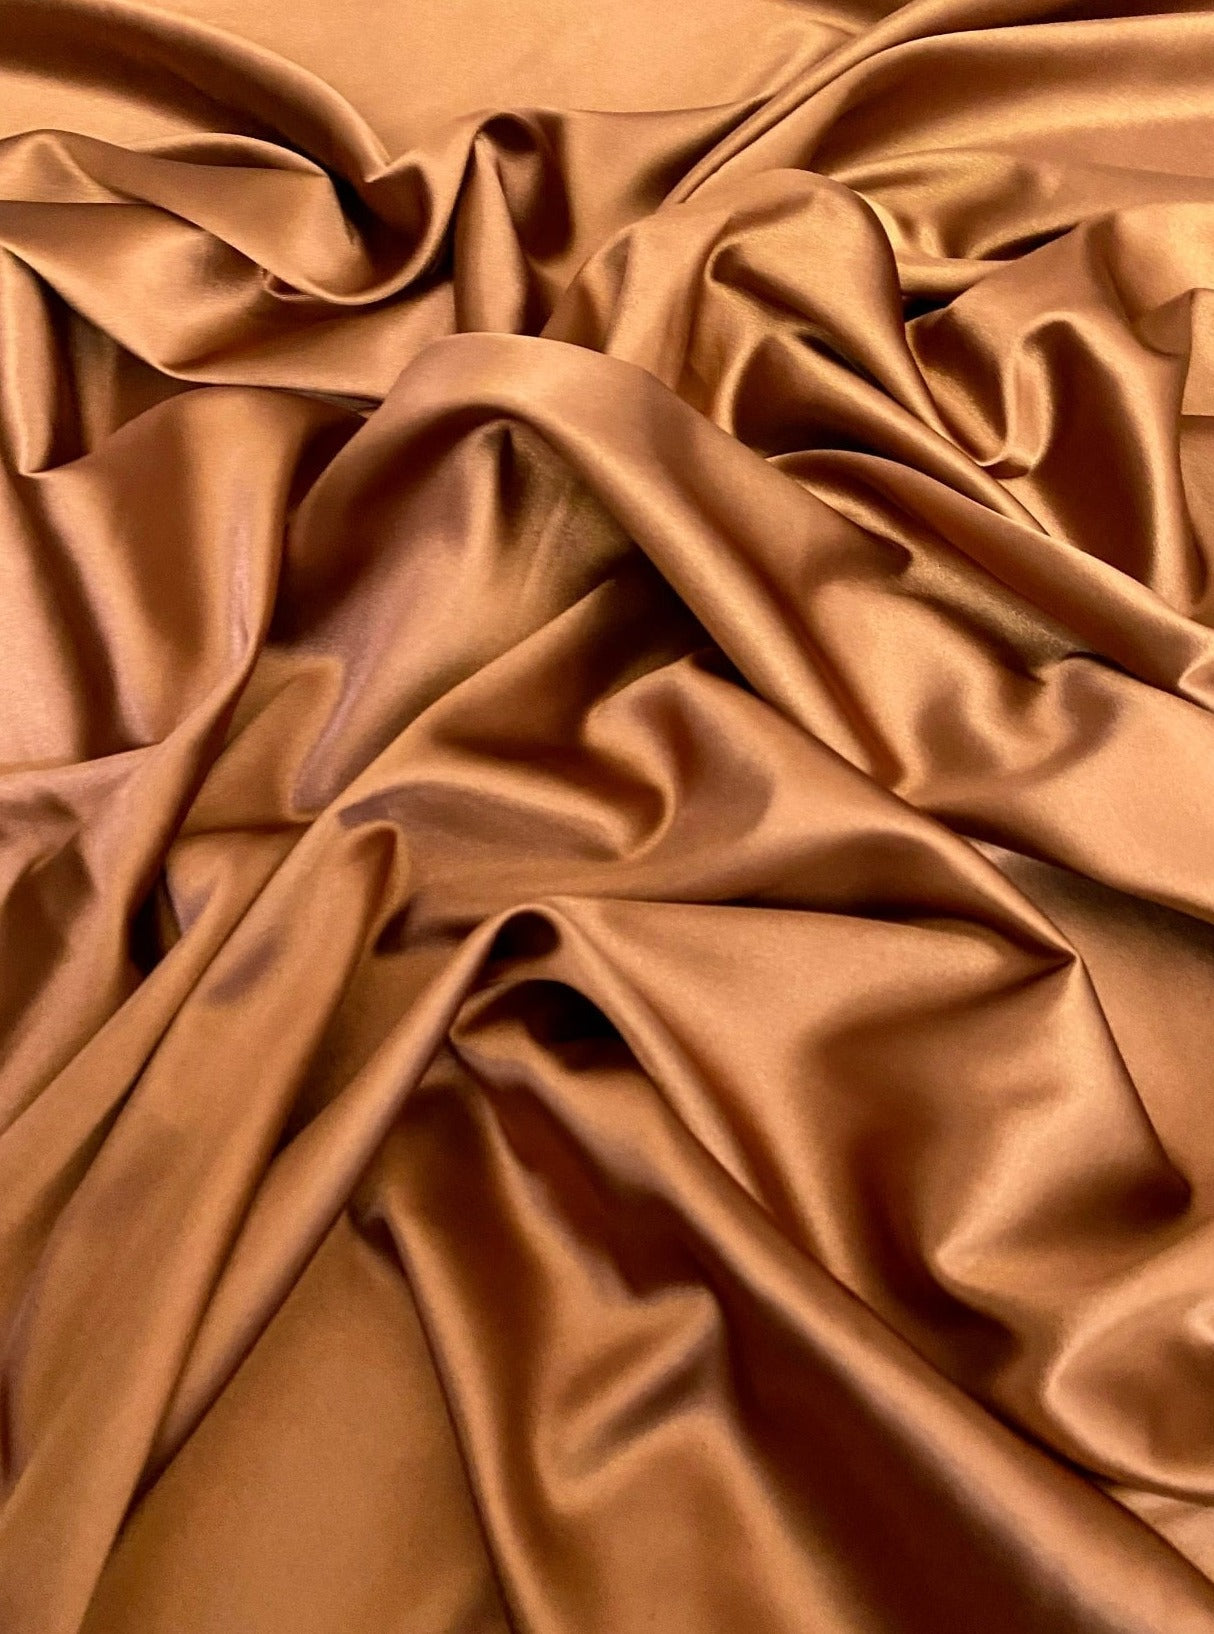 Quick Order 4.25 Premium Sewn Satin Fabric Sash –